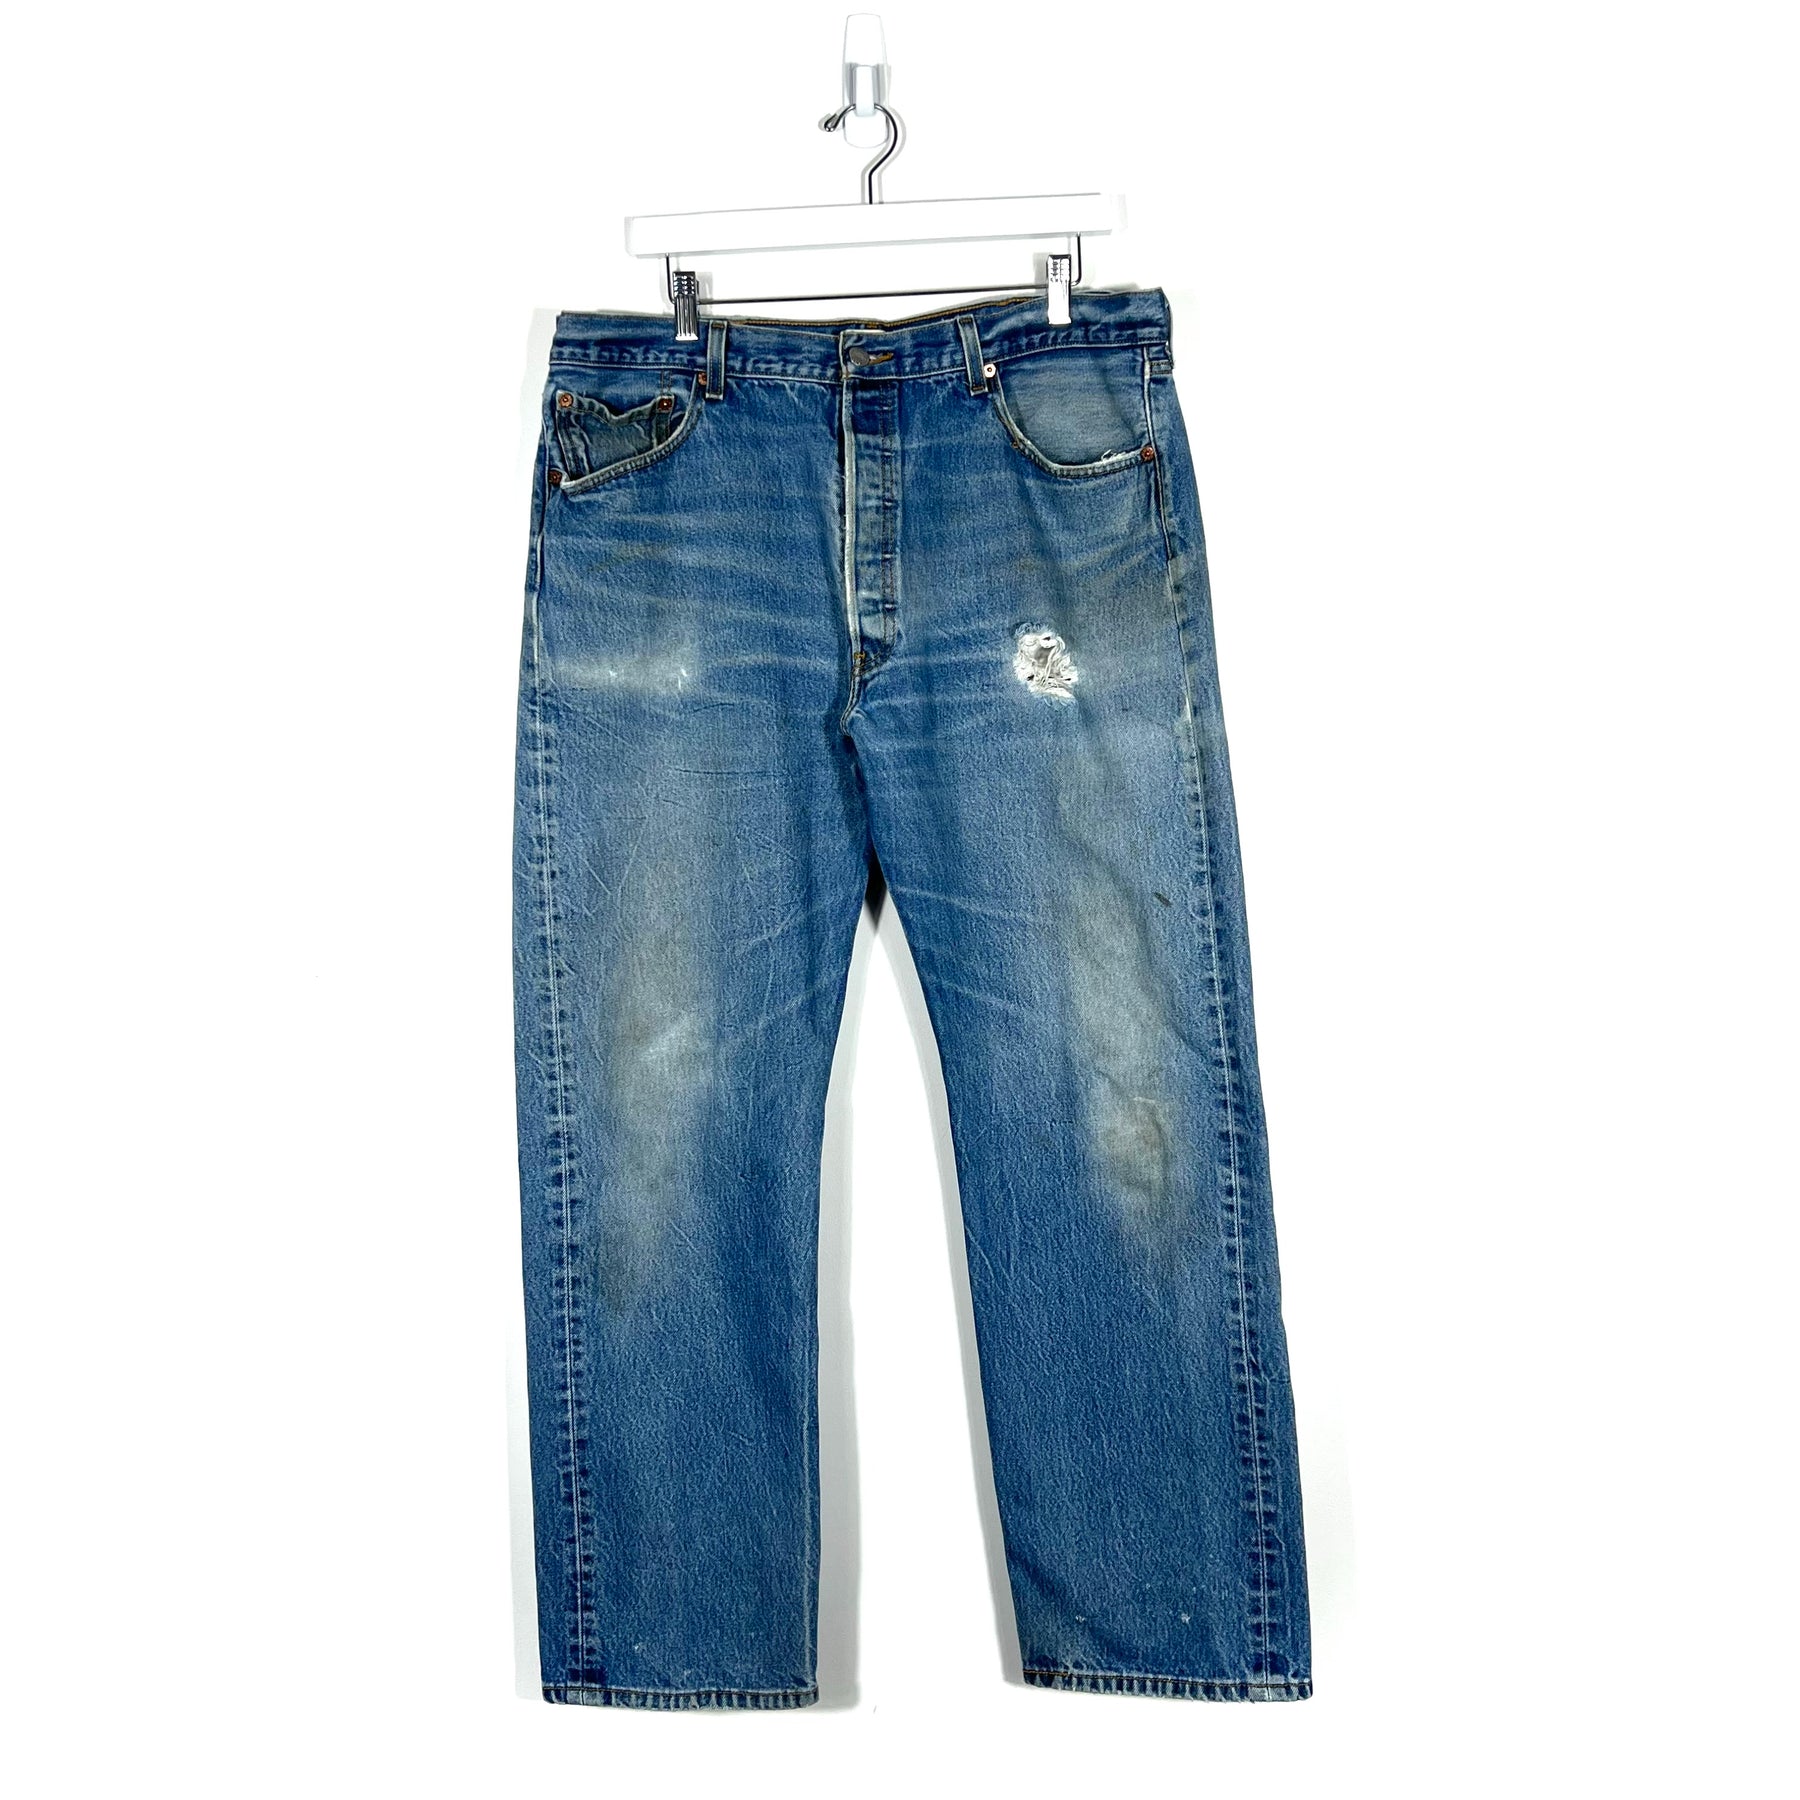 Vintage Levis 501 Jeans - Men's 40/34